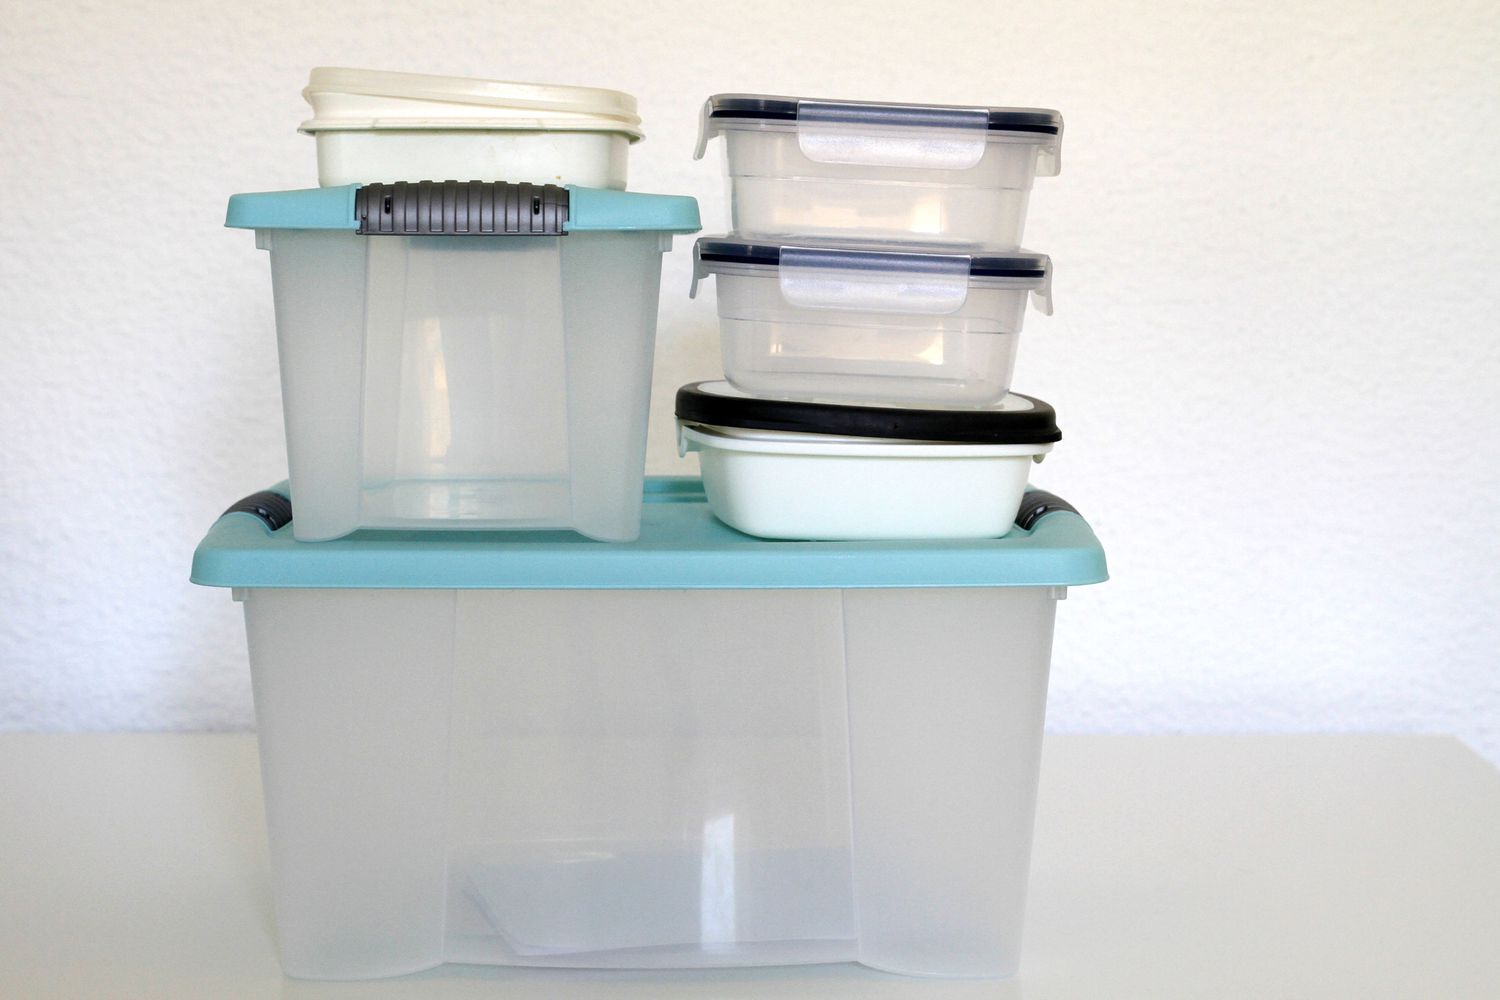 Caixas de armazenamento de plástico transparente vazias com tampas azuis.